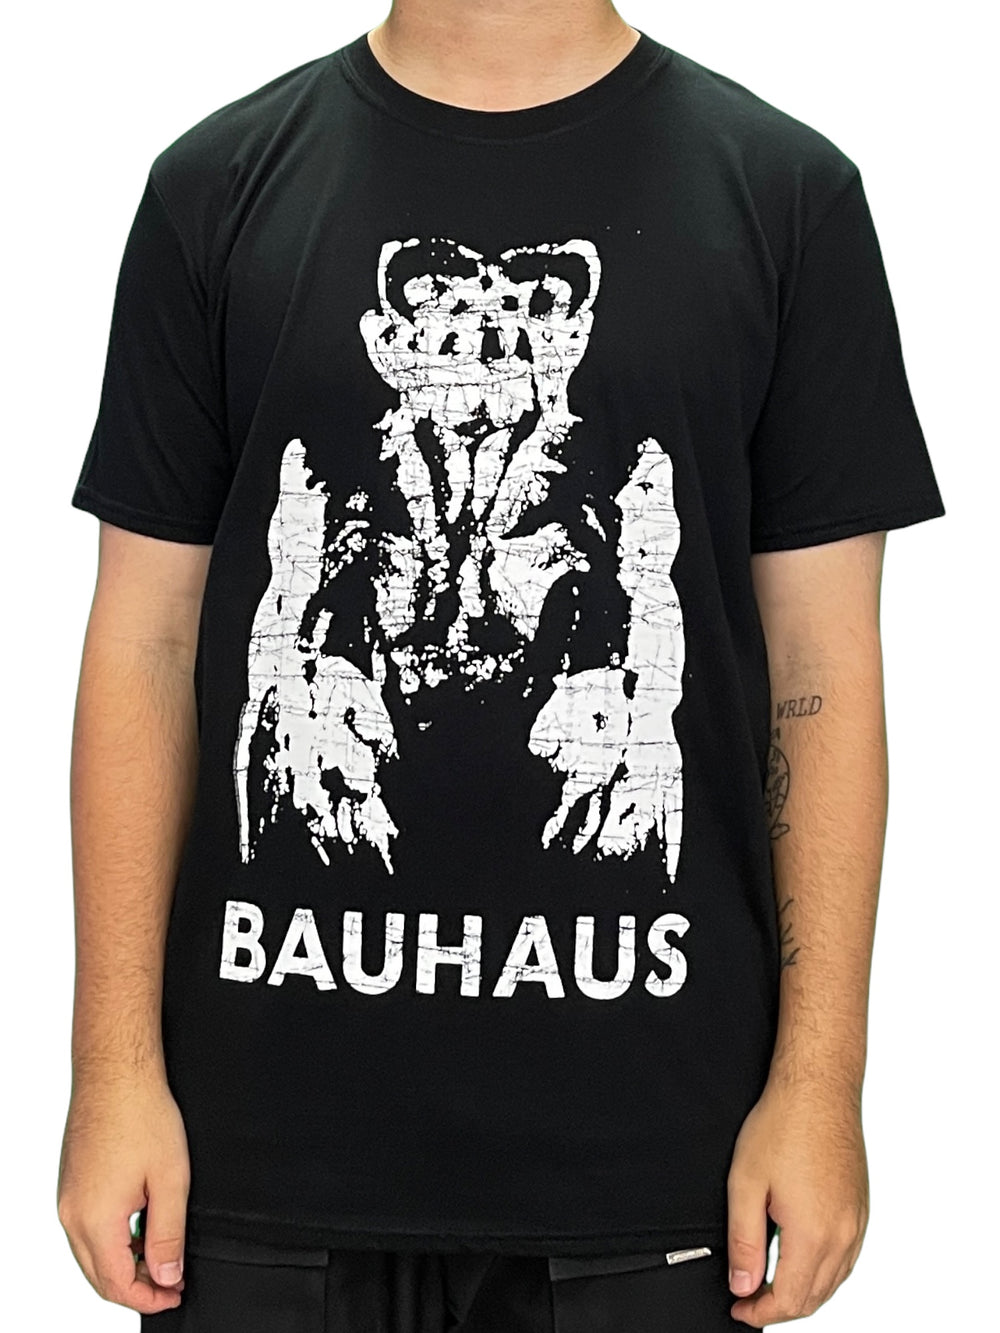 Bauhaus Gargoyle Official Unisex T Shirt Brand New Various Sizes